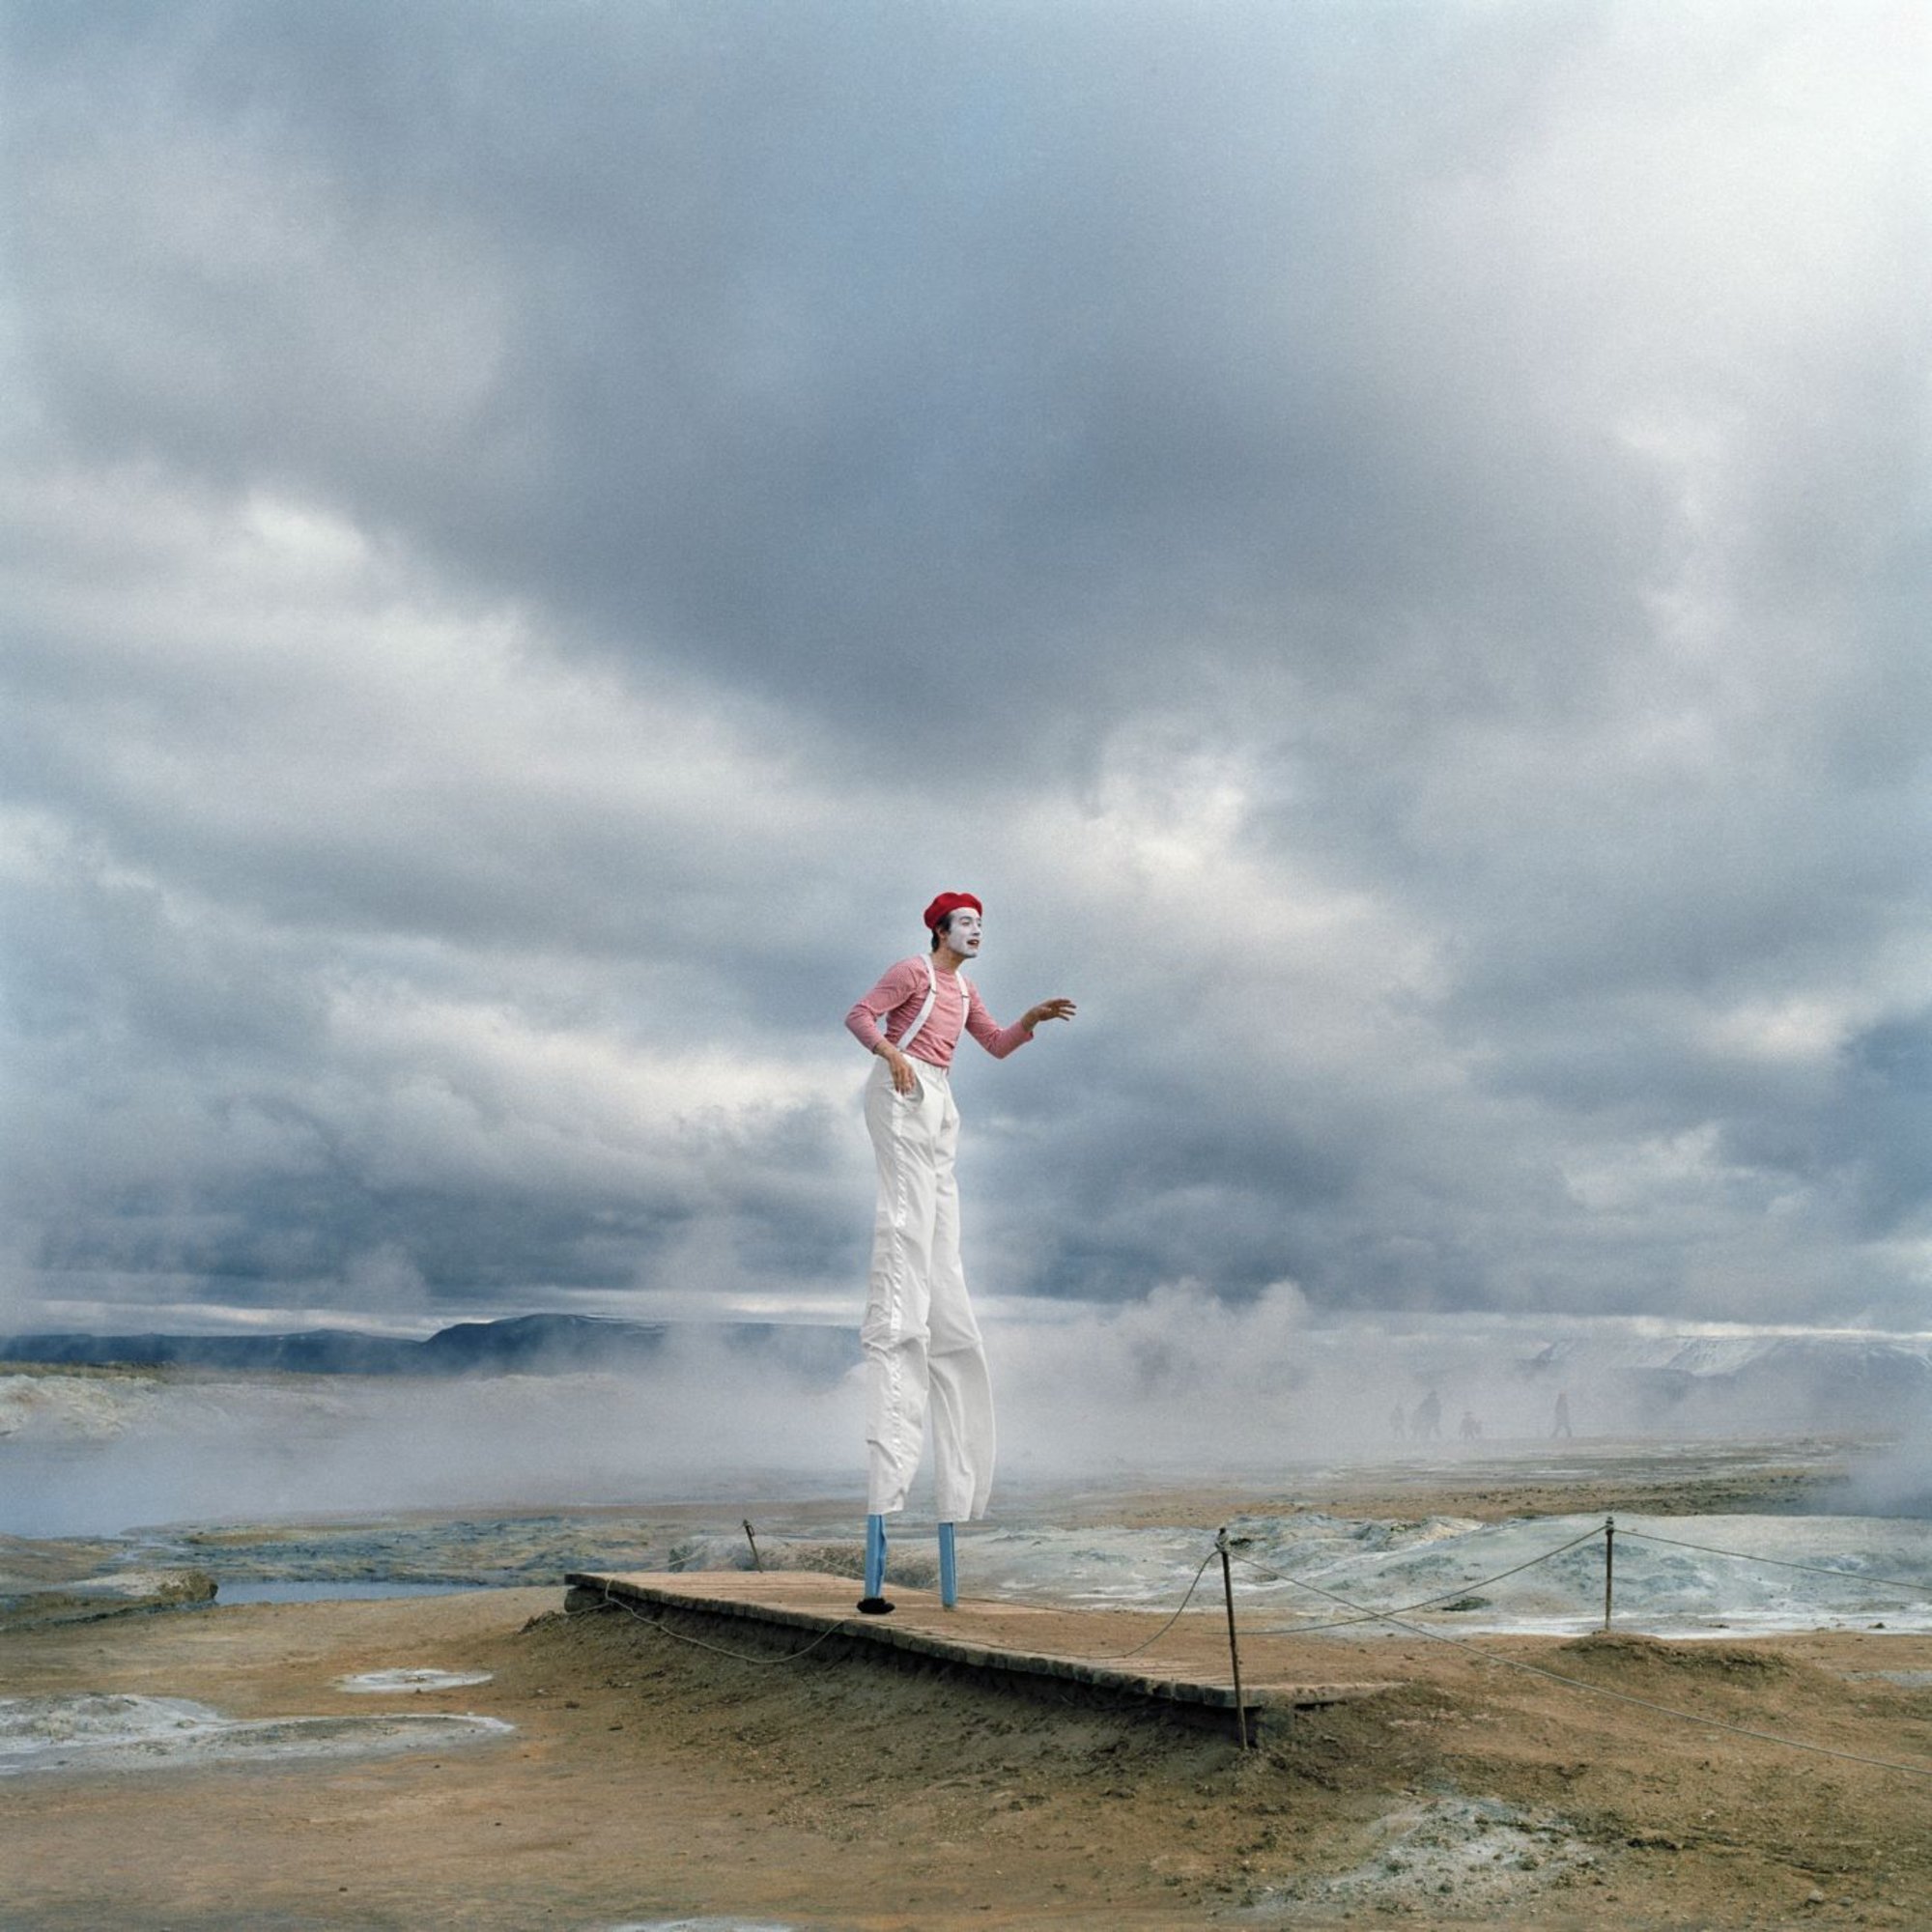 Ein weißgekleideter, geschminkter Pantomime auf Stelzen auf einem Steg am Strand vor wolkenverhangenem Himmel
Bild: Johanna Maria Fritz | Agentur Ostkreuz